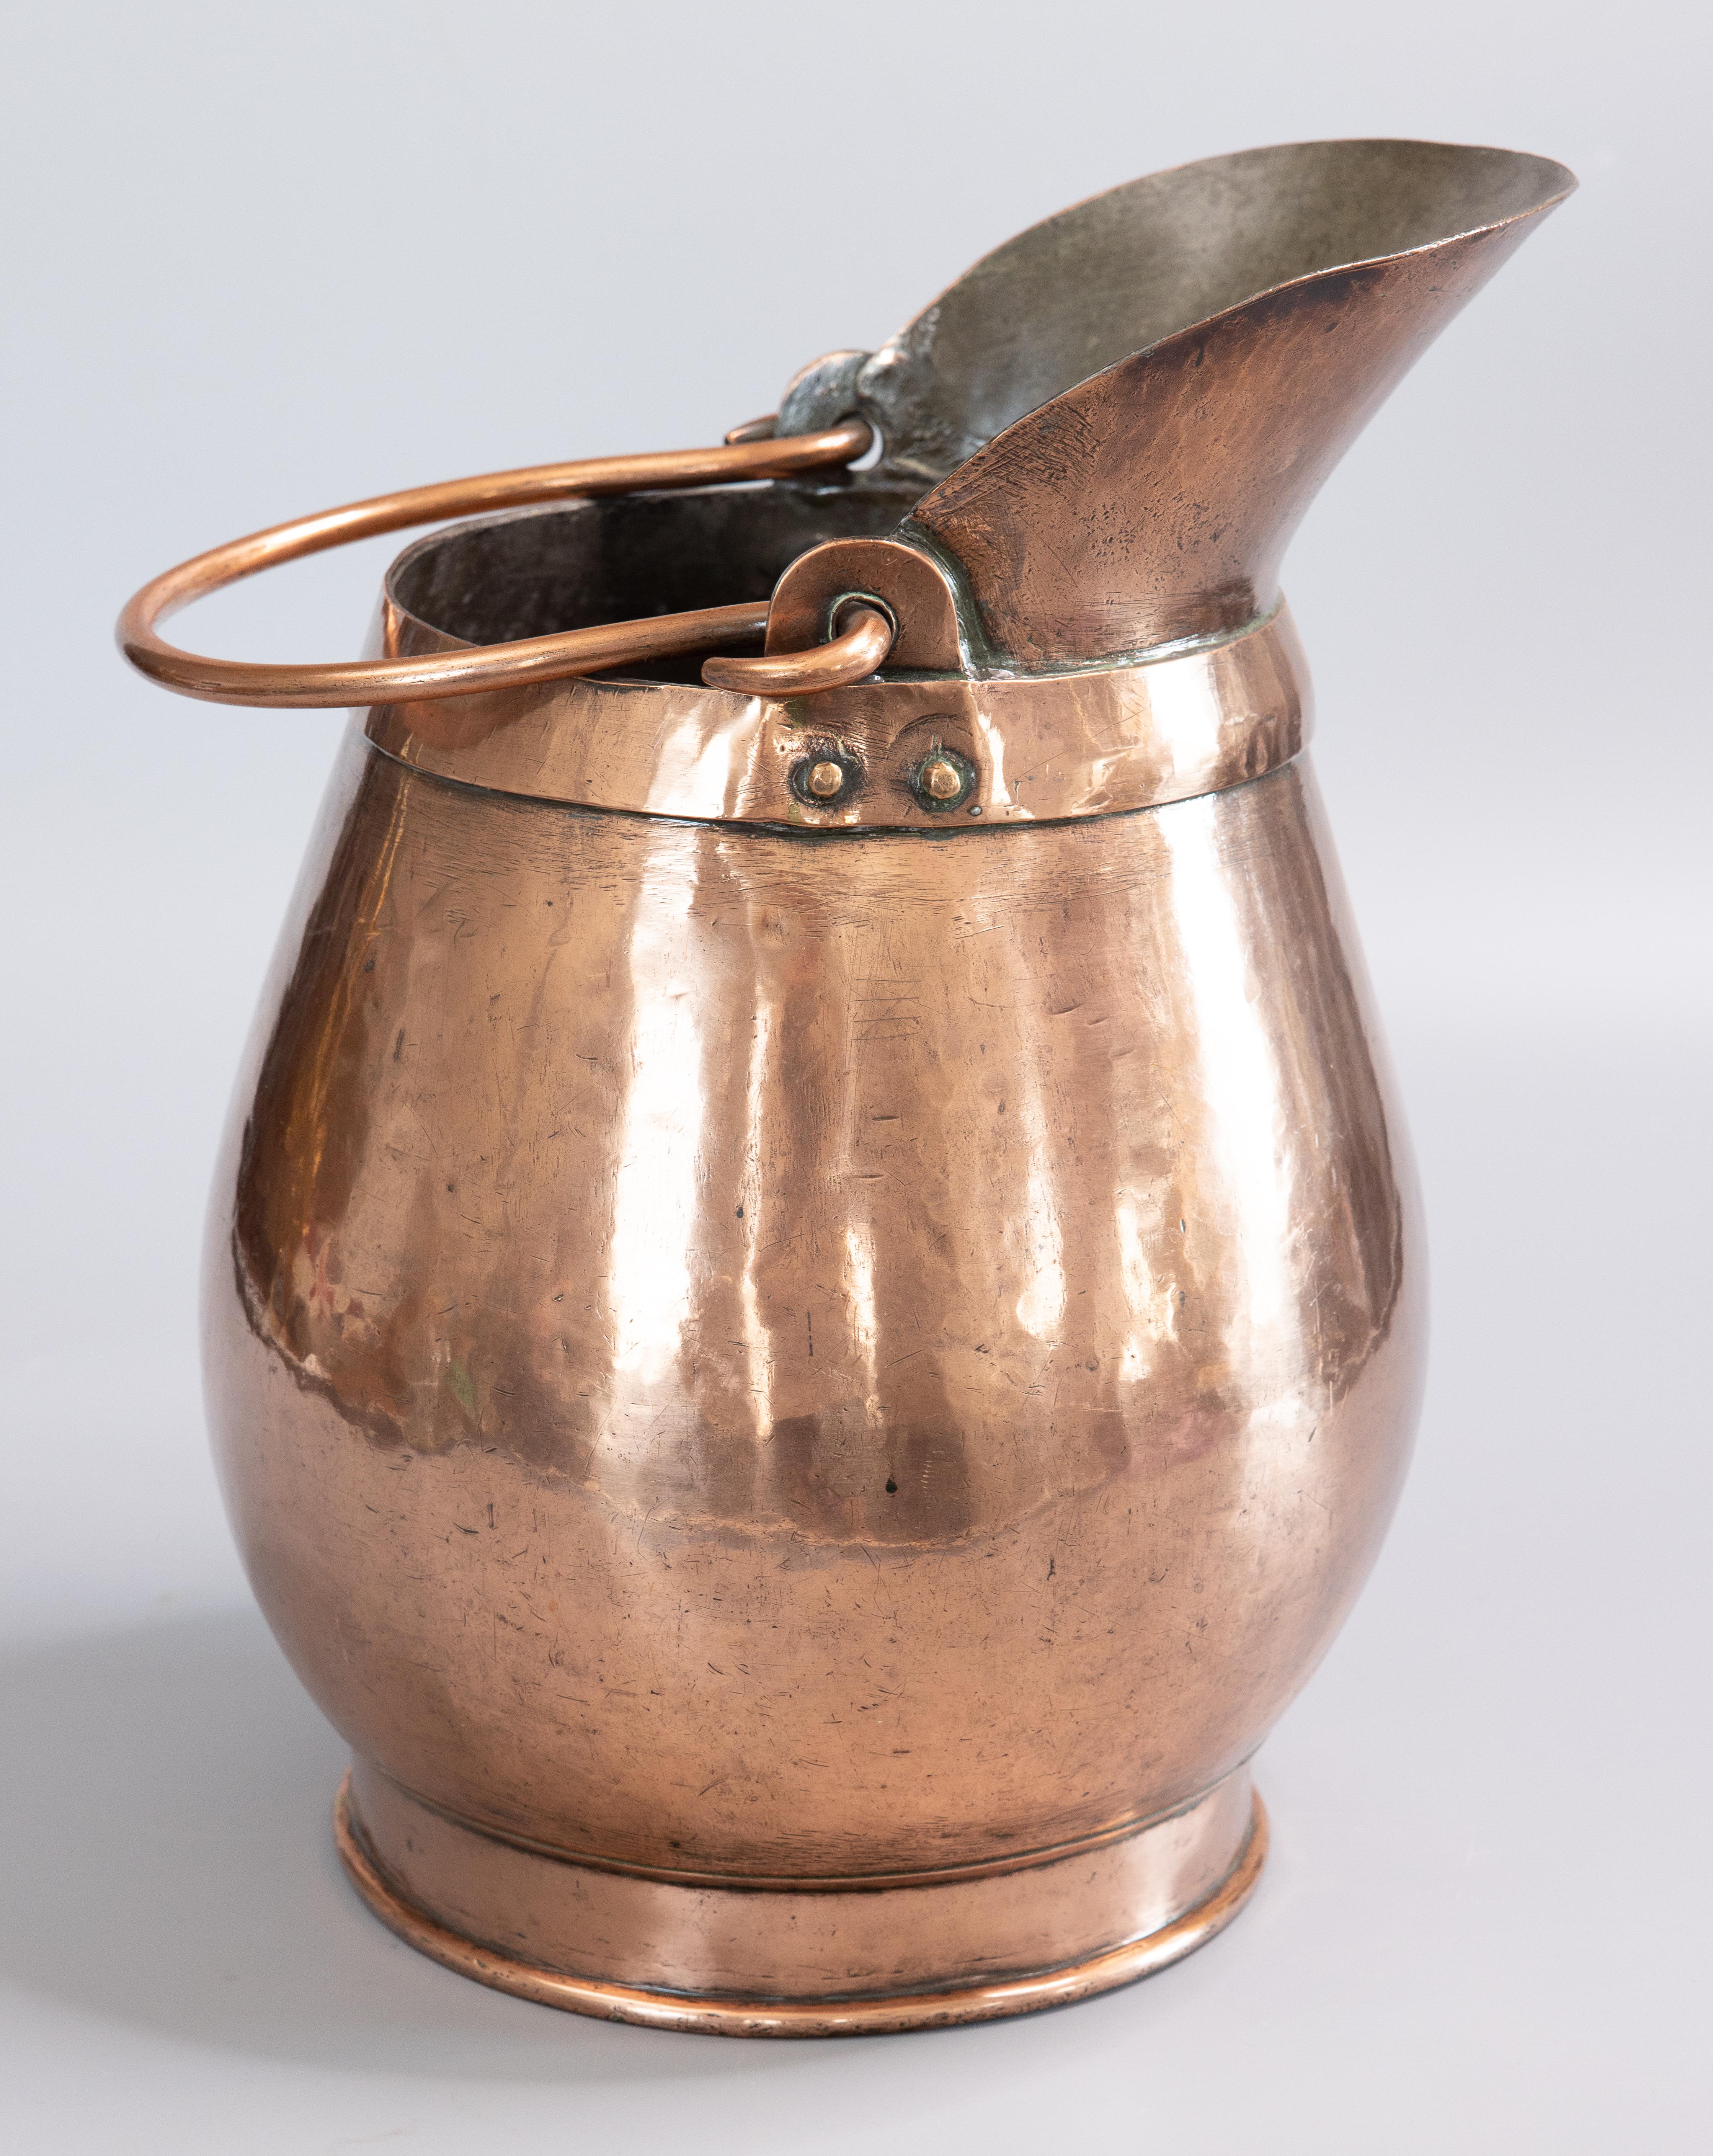 Ein hervorragender großer französischer handgehämmerter Kupferkrug aus dem frühen 19. Jahrhundert. Dieser herrliche Krug ist solide und schwer mit einem Gewicht von über 11 Pfund, handgeschmiedet mit Kupfernieten, Schwalbenschwanznaht und einem